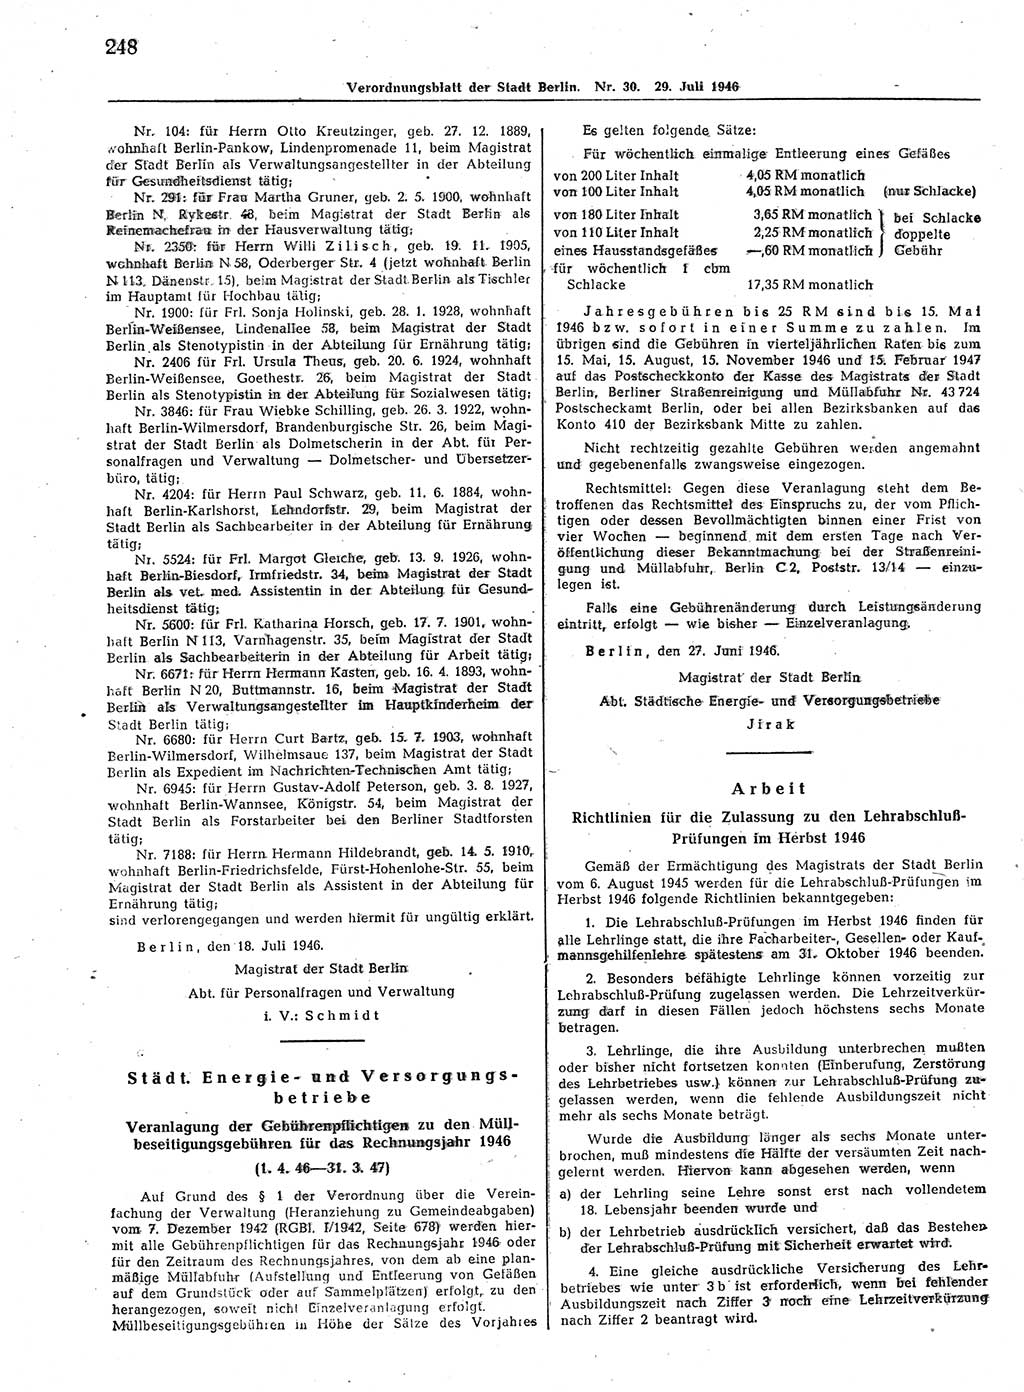 Verordnungsblatt (VOBl.) der Stadt Berlin, für Groß-Berlin 1946, Seite 248 (VOBl. Bln. 1946, S. 248)